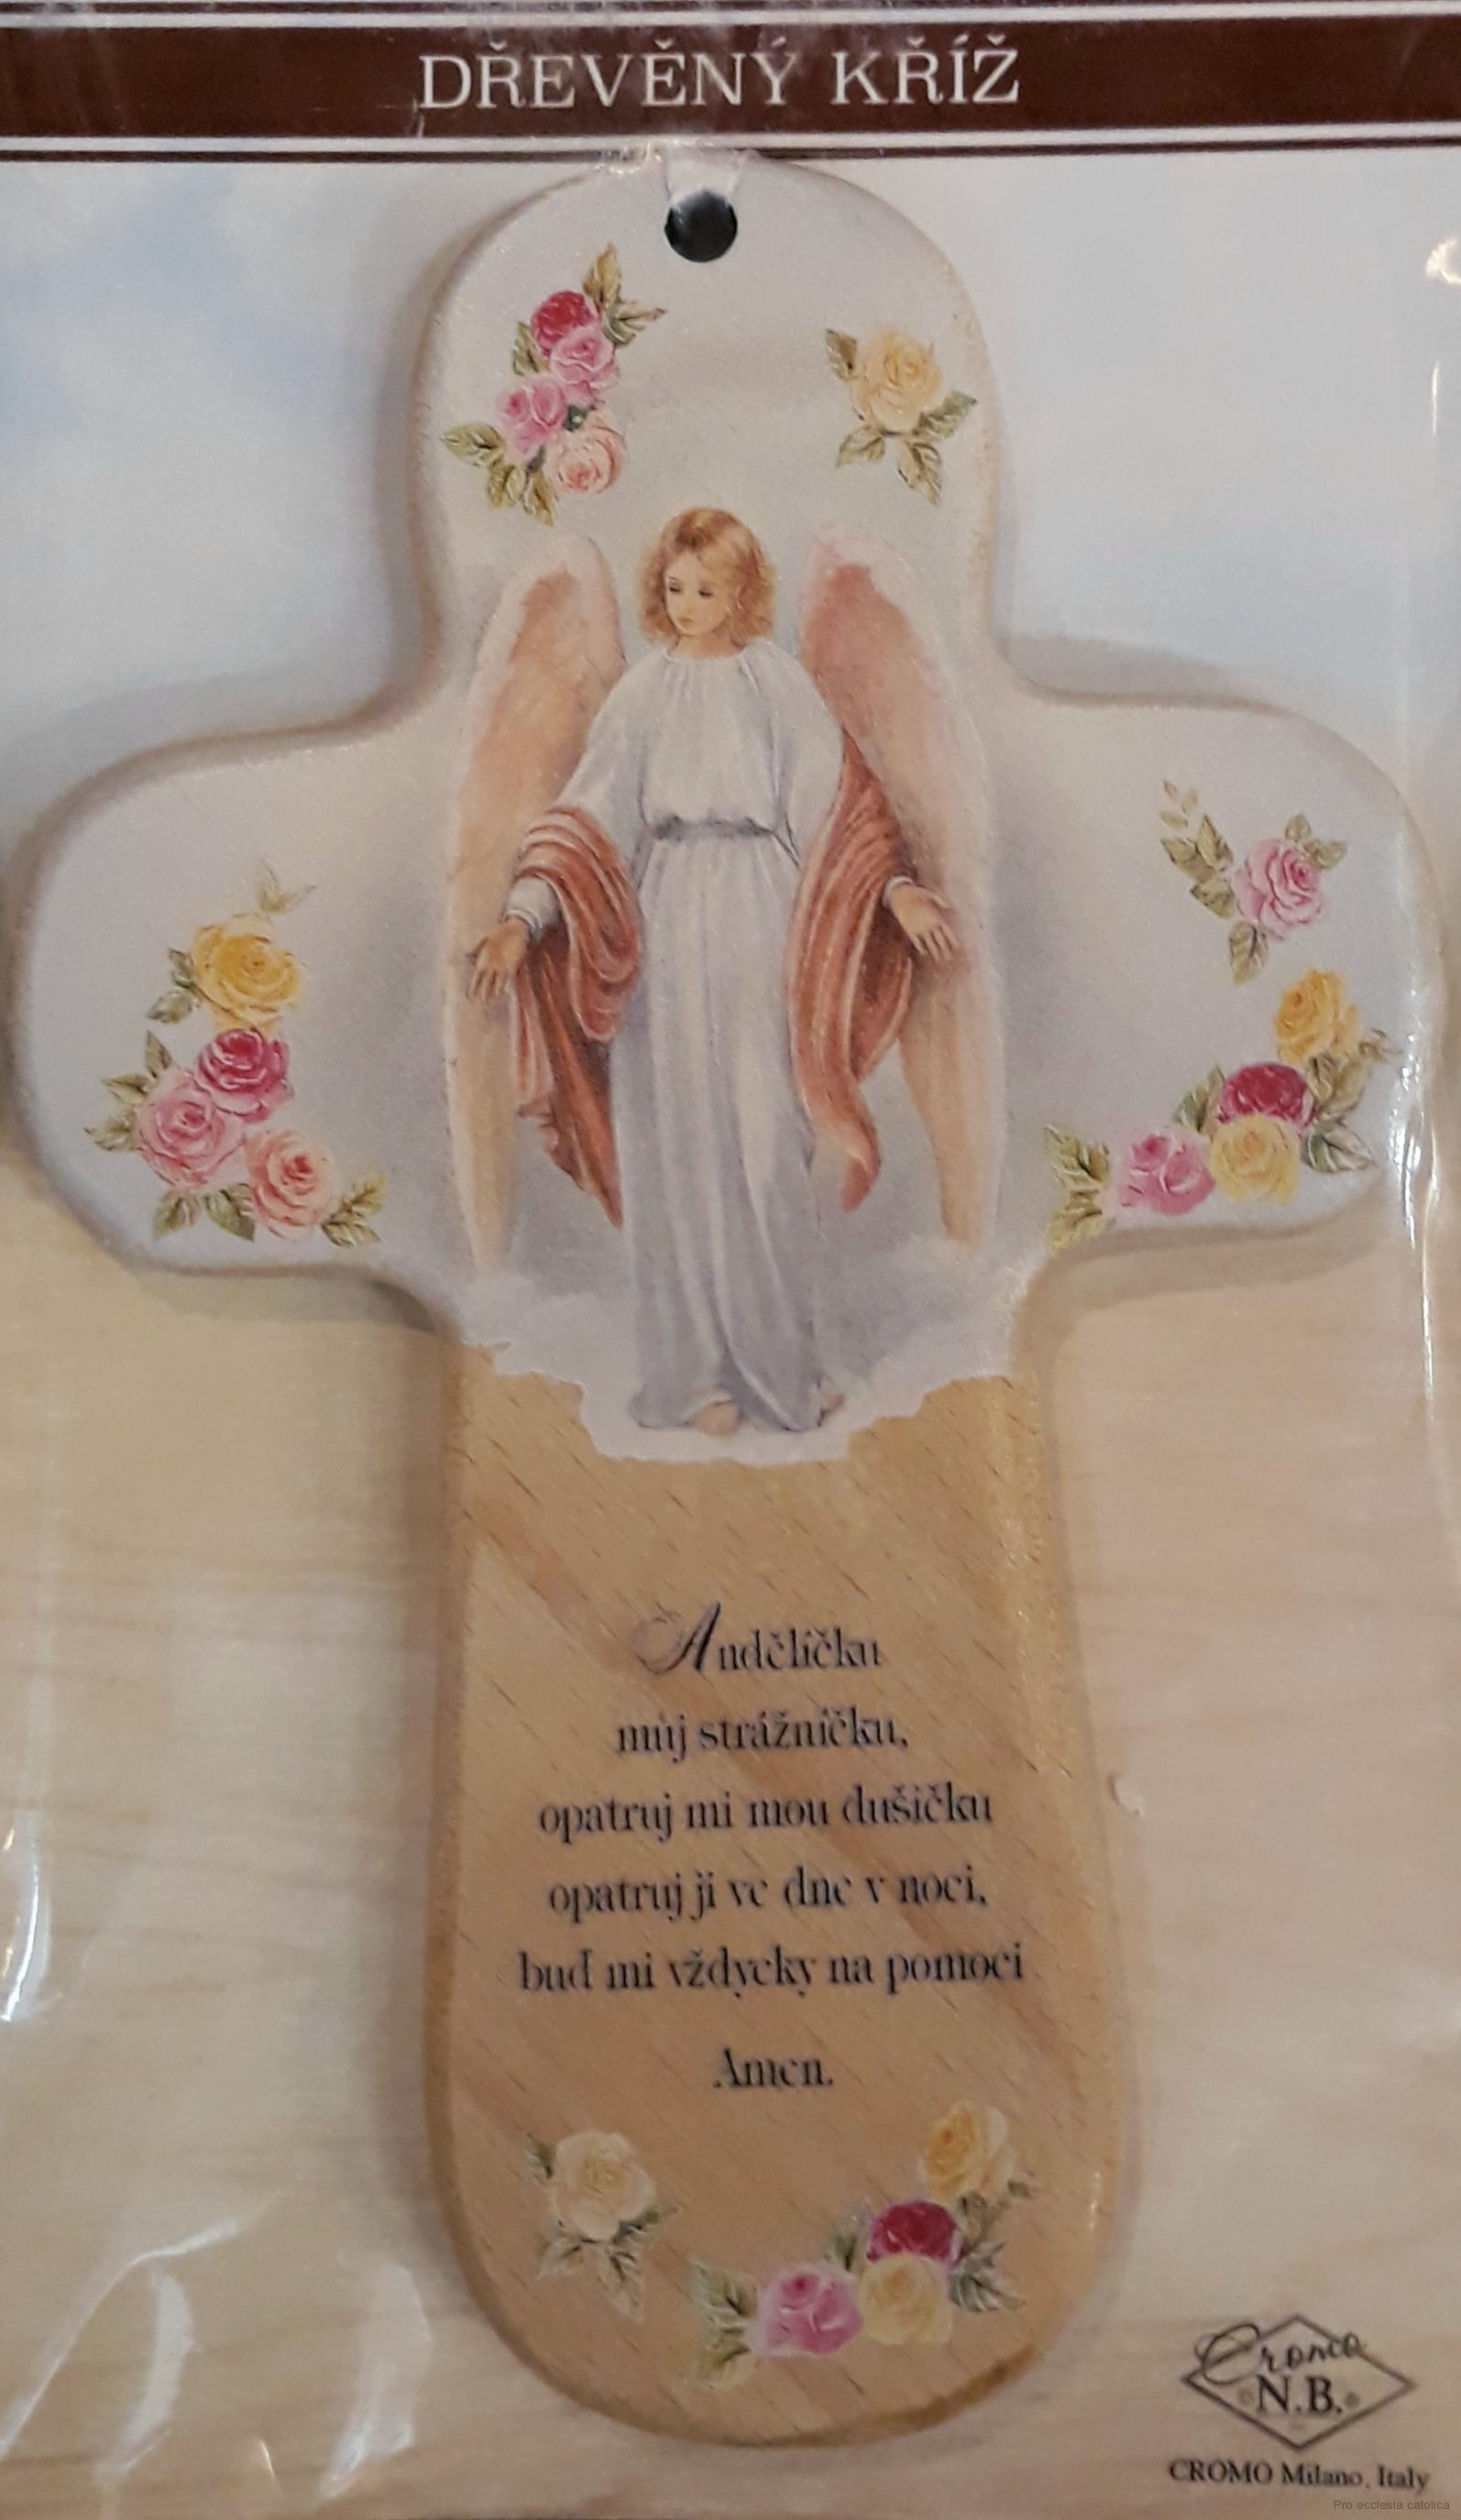 Dřevěný křížek s obrázkem Anděla